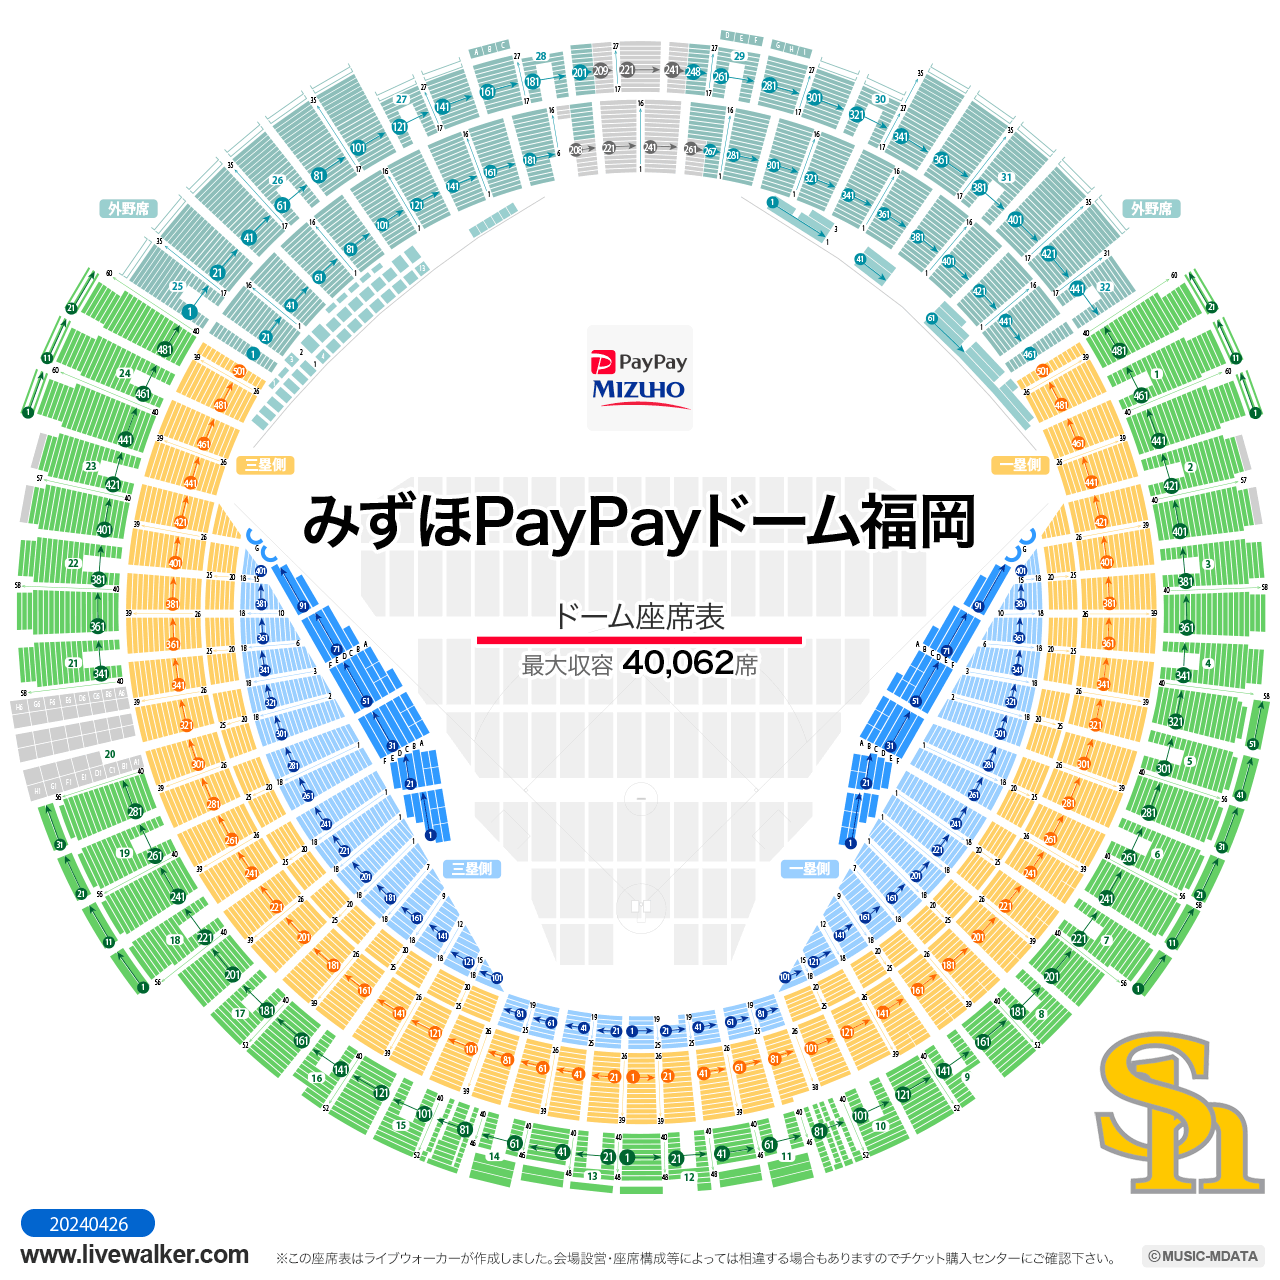 福岡PayPayドームスタジアムの座席表